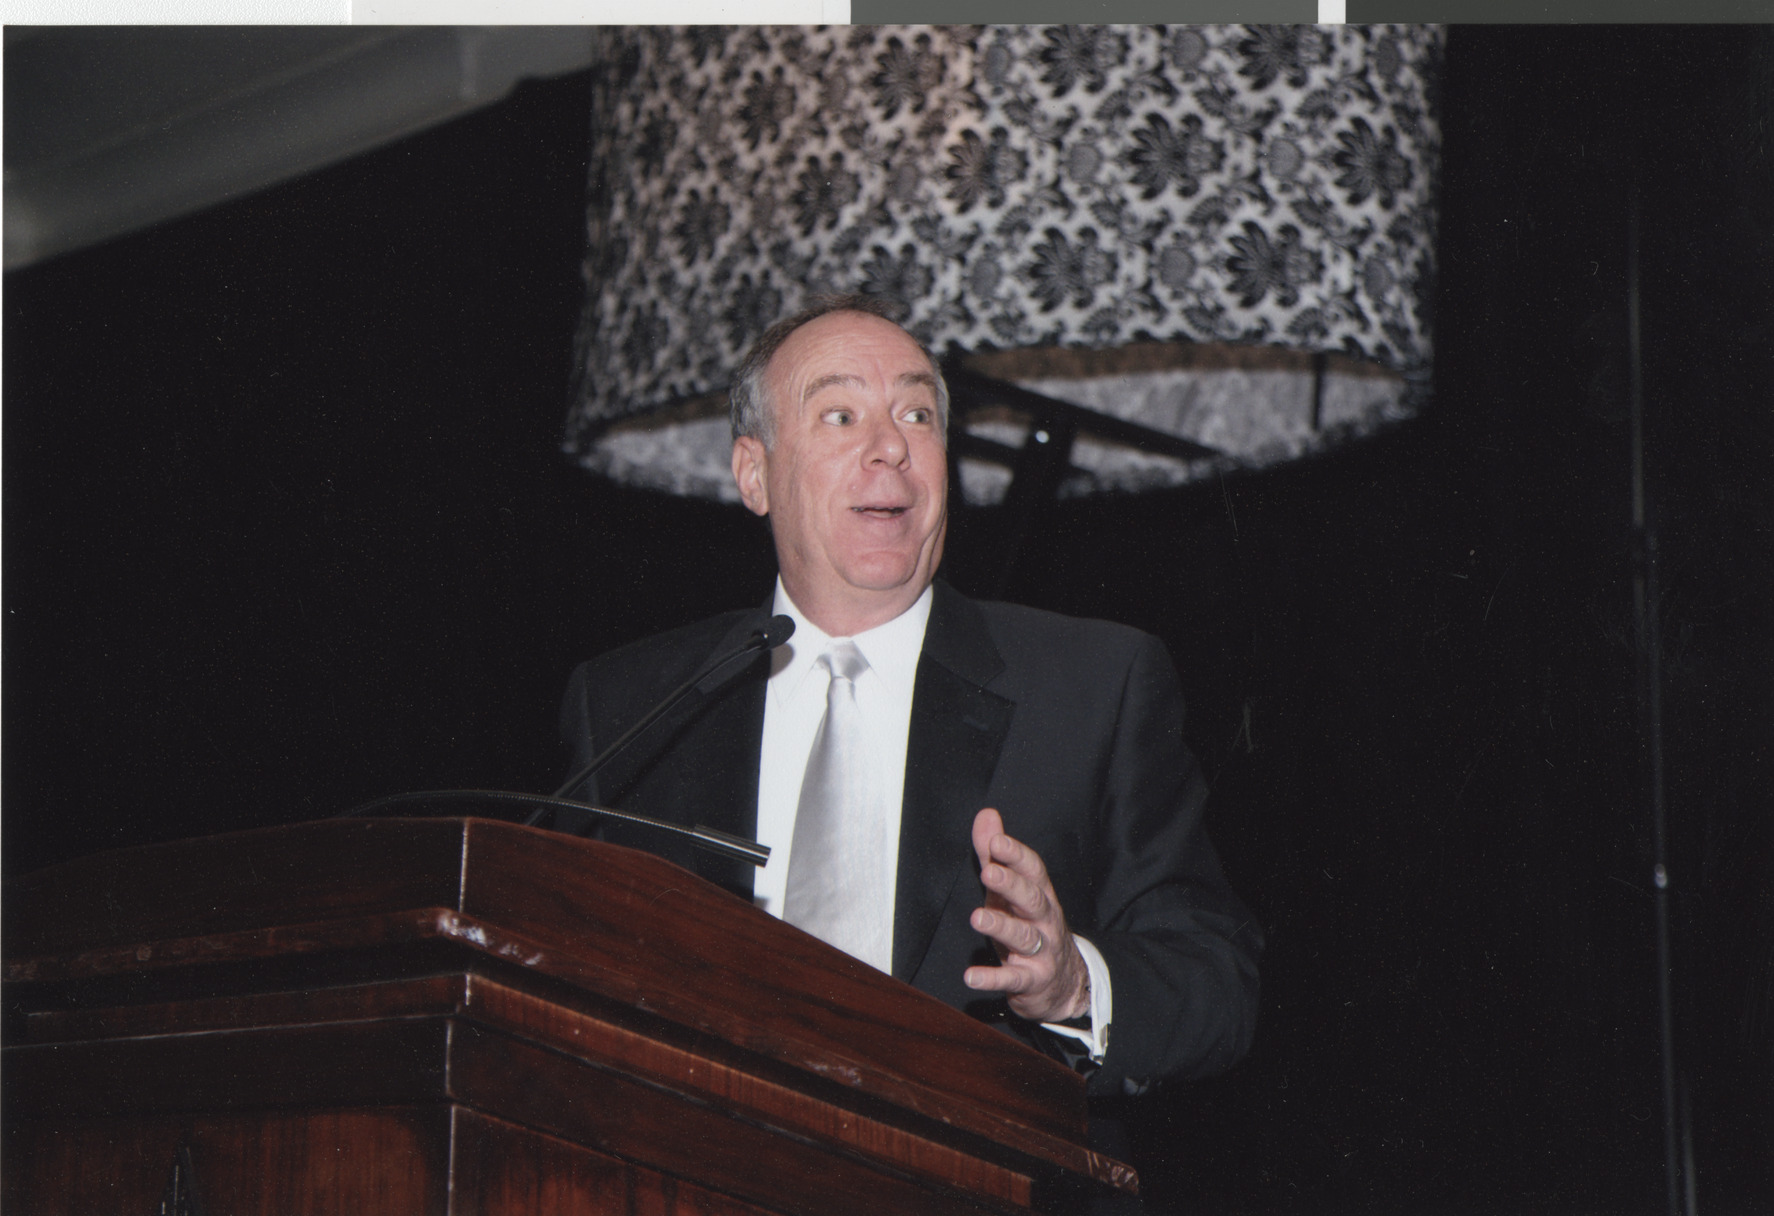 Photograph of a man at a podium, April 2008